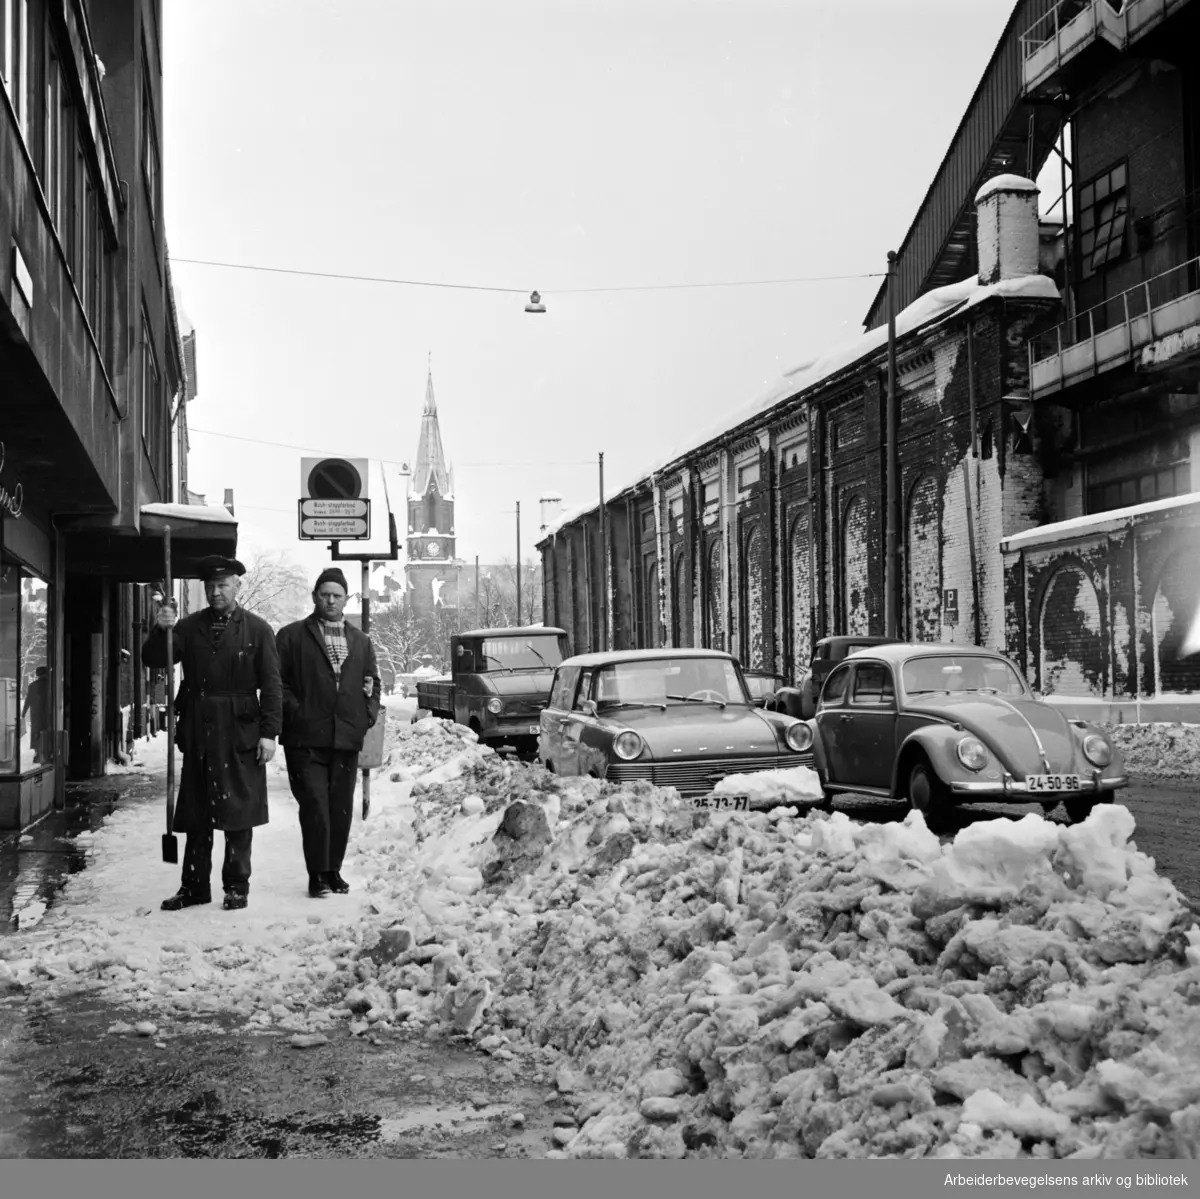 Snø på fortauene i Oslo sentrum. Hausmanns gate med muren til gassverksområdet til høyre. Jakobs kirke i bakgrunnen. Februar 1967.